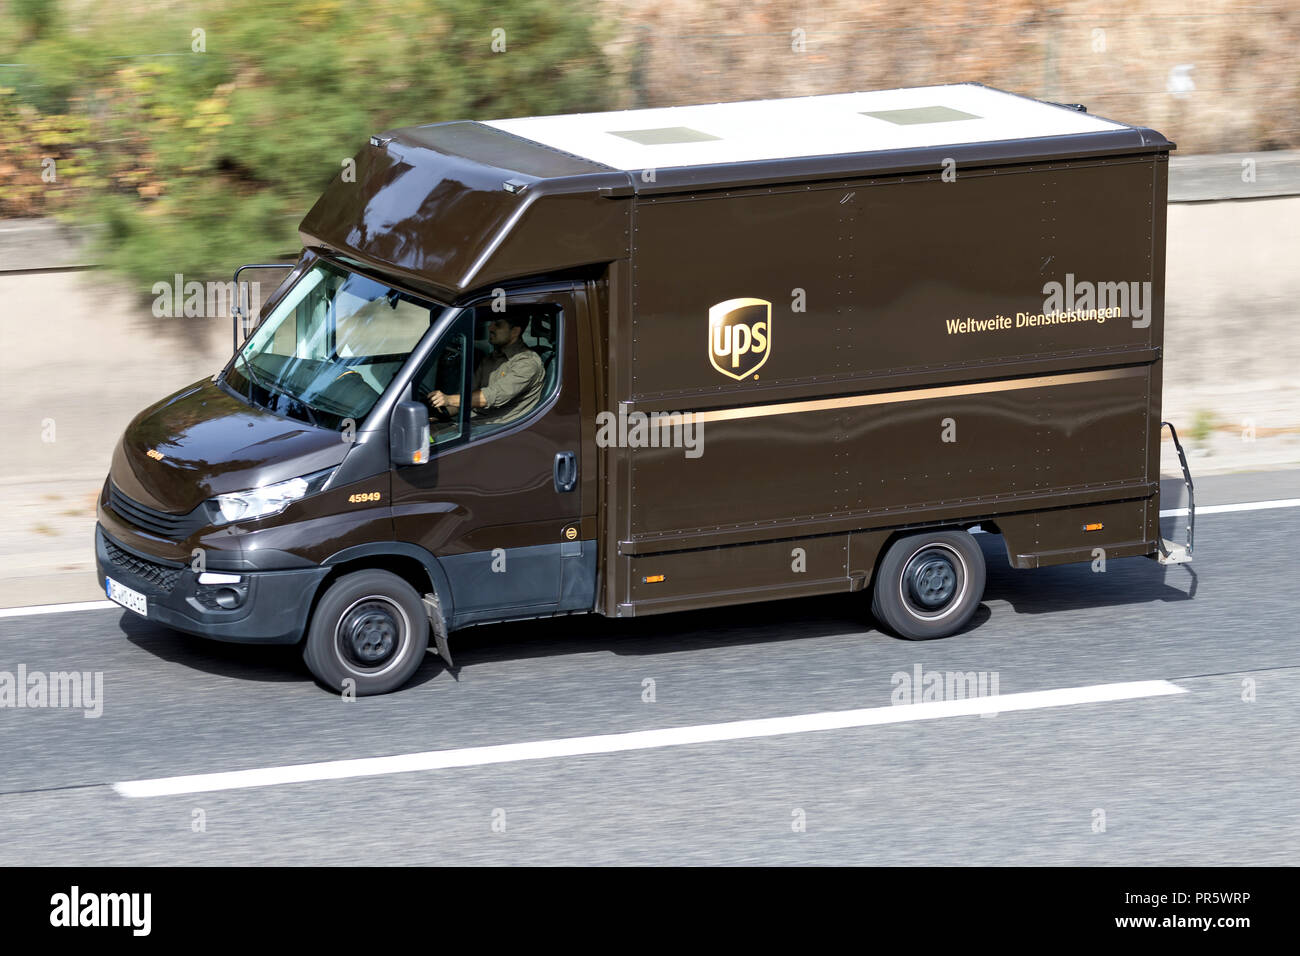 UPS van auf der Autobahn. UPS ist der weltgrößte Paketdienst und ein Anbieter von Supply Chain Management Lösungen. Stockfoto